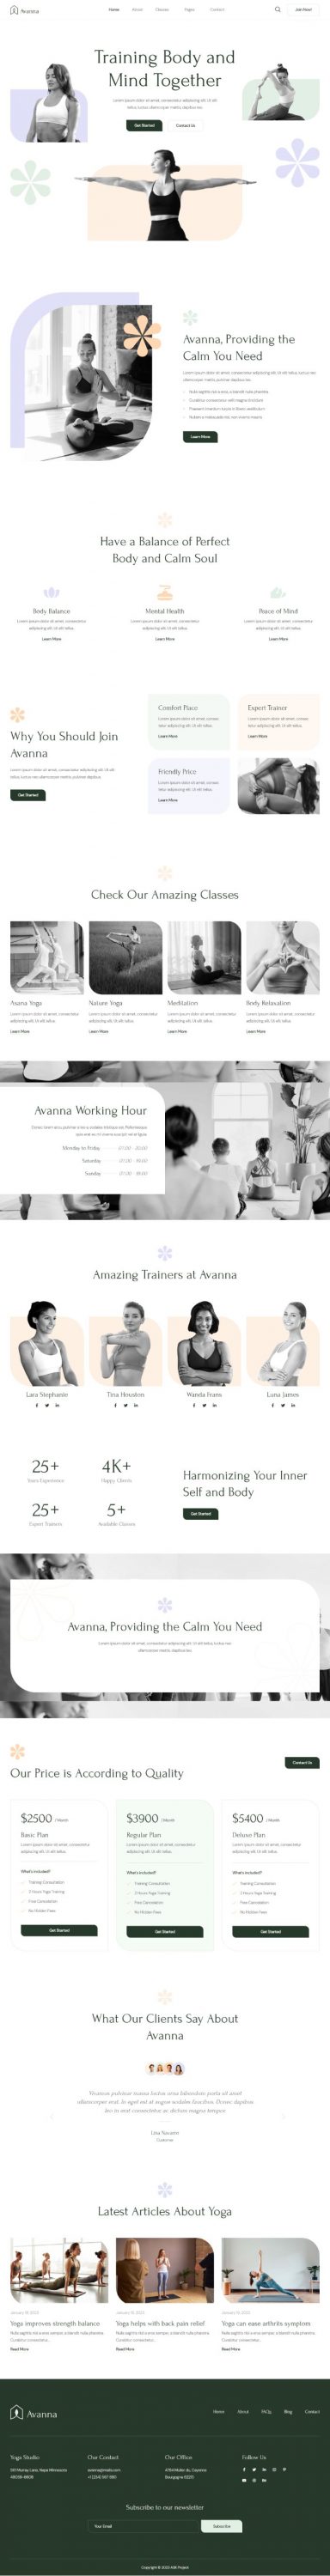 Mẫu website dịch vụ trung tâm yoga - Avanna